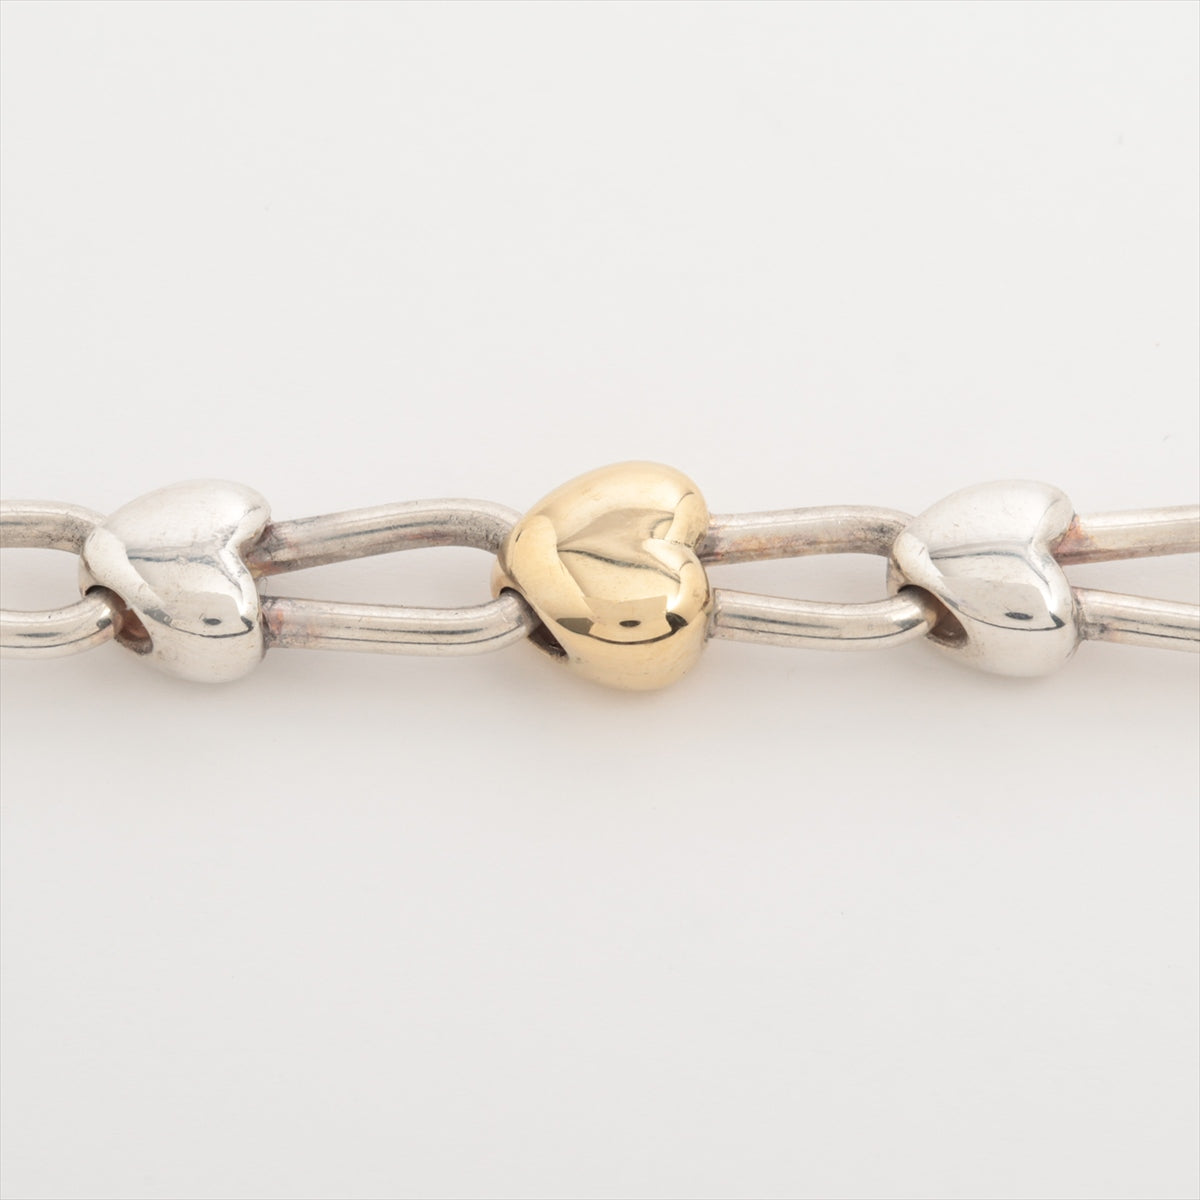 Tiffany Heart Lock Bracelet 925×750 26.9g Gold × Silver